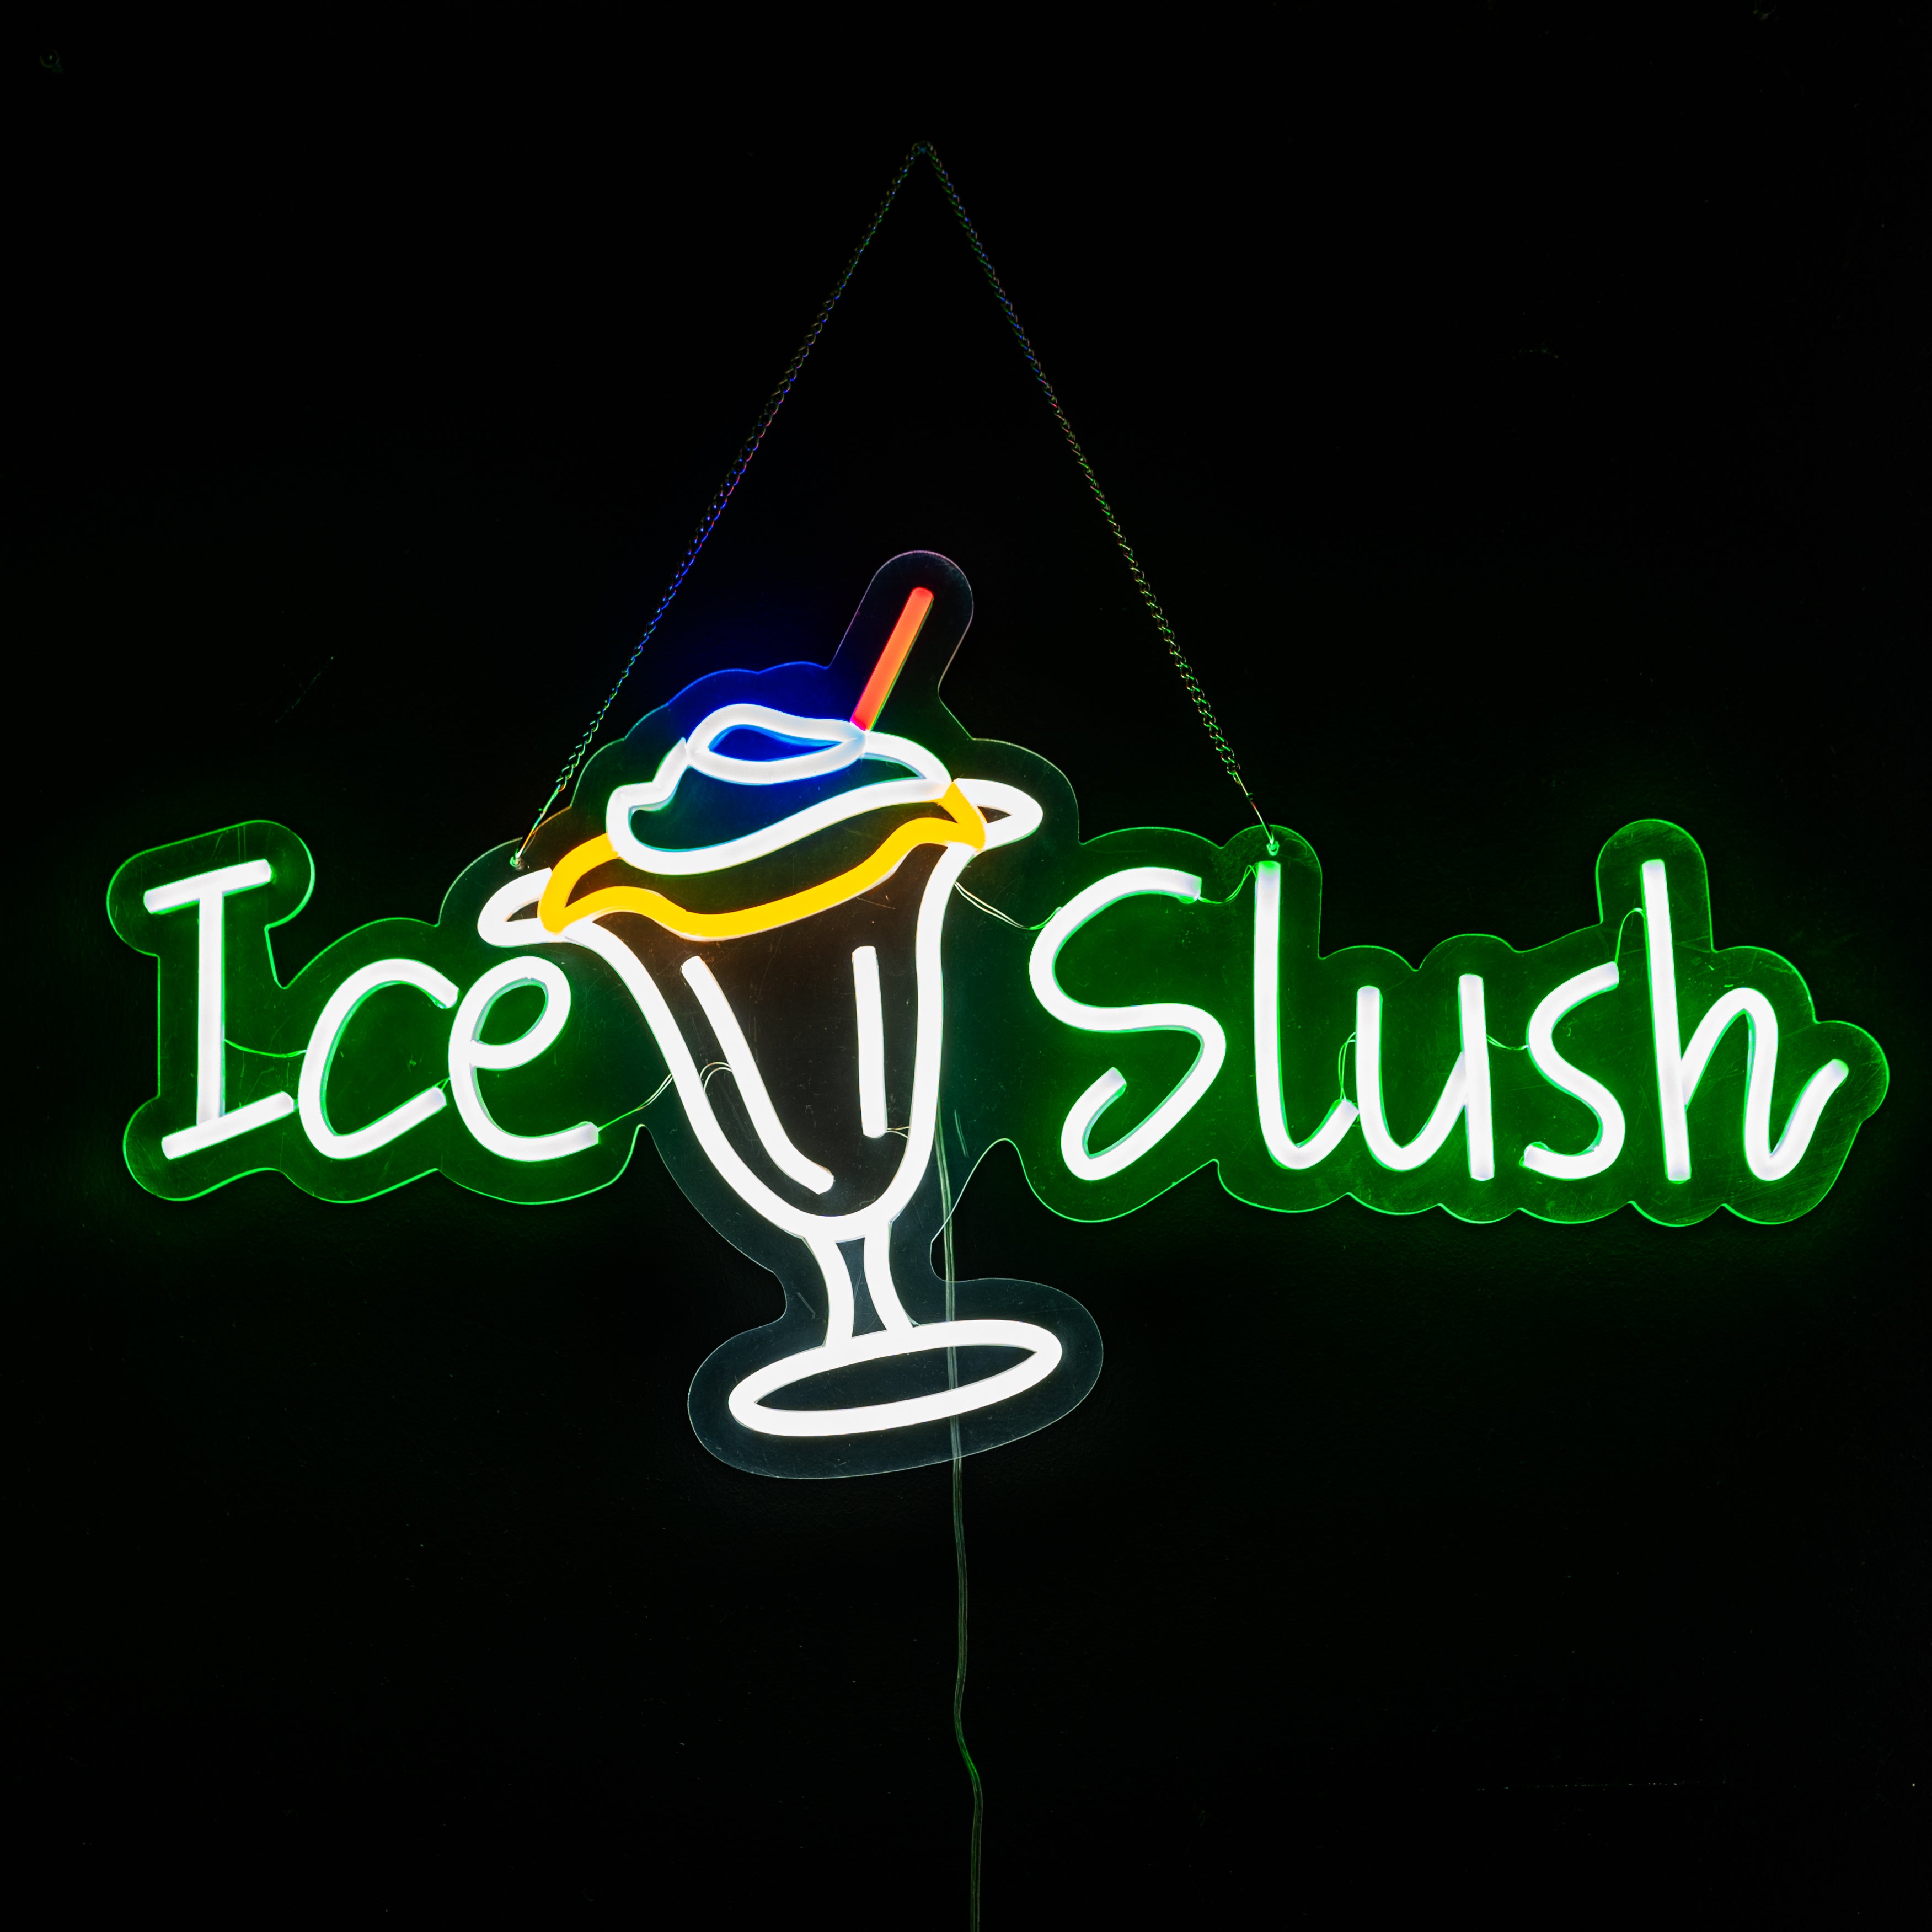 Slush Neon style LED light up sign